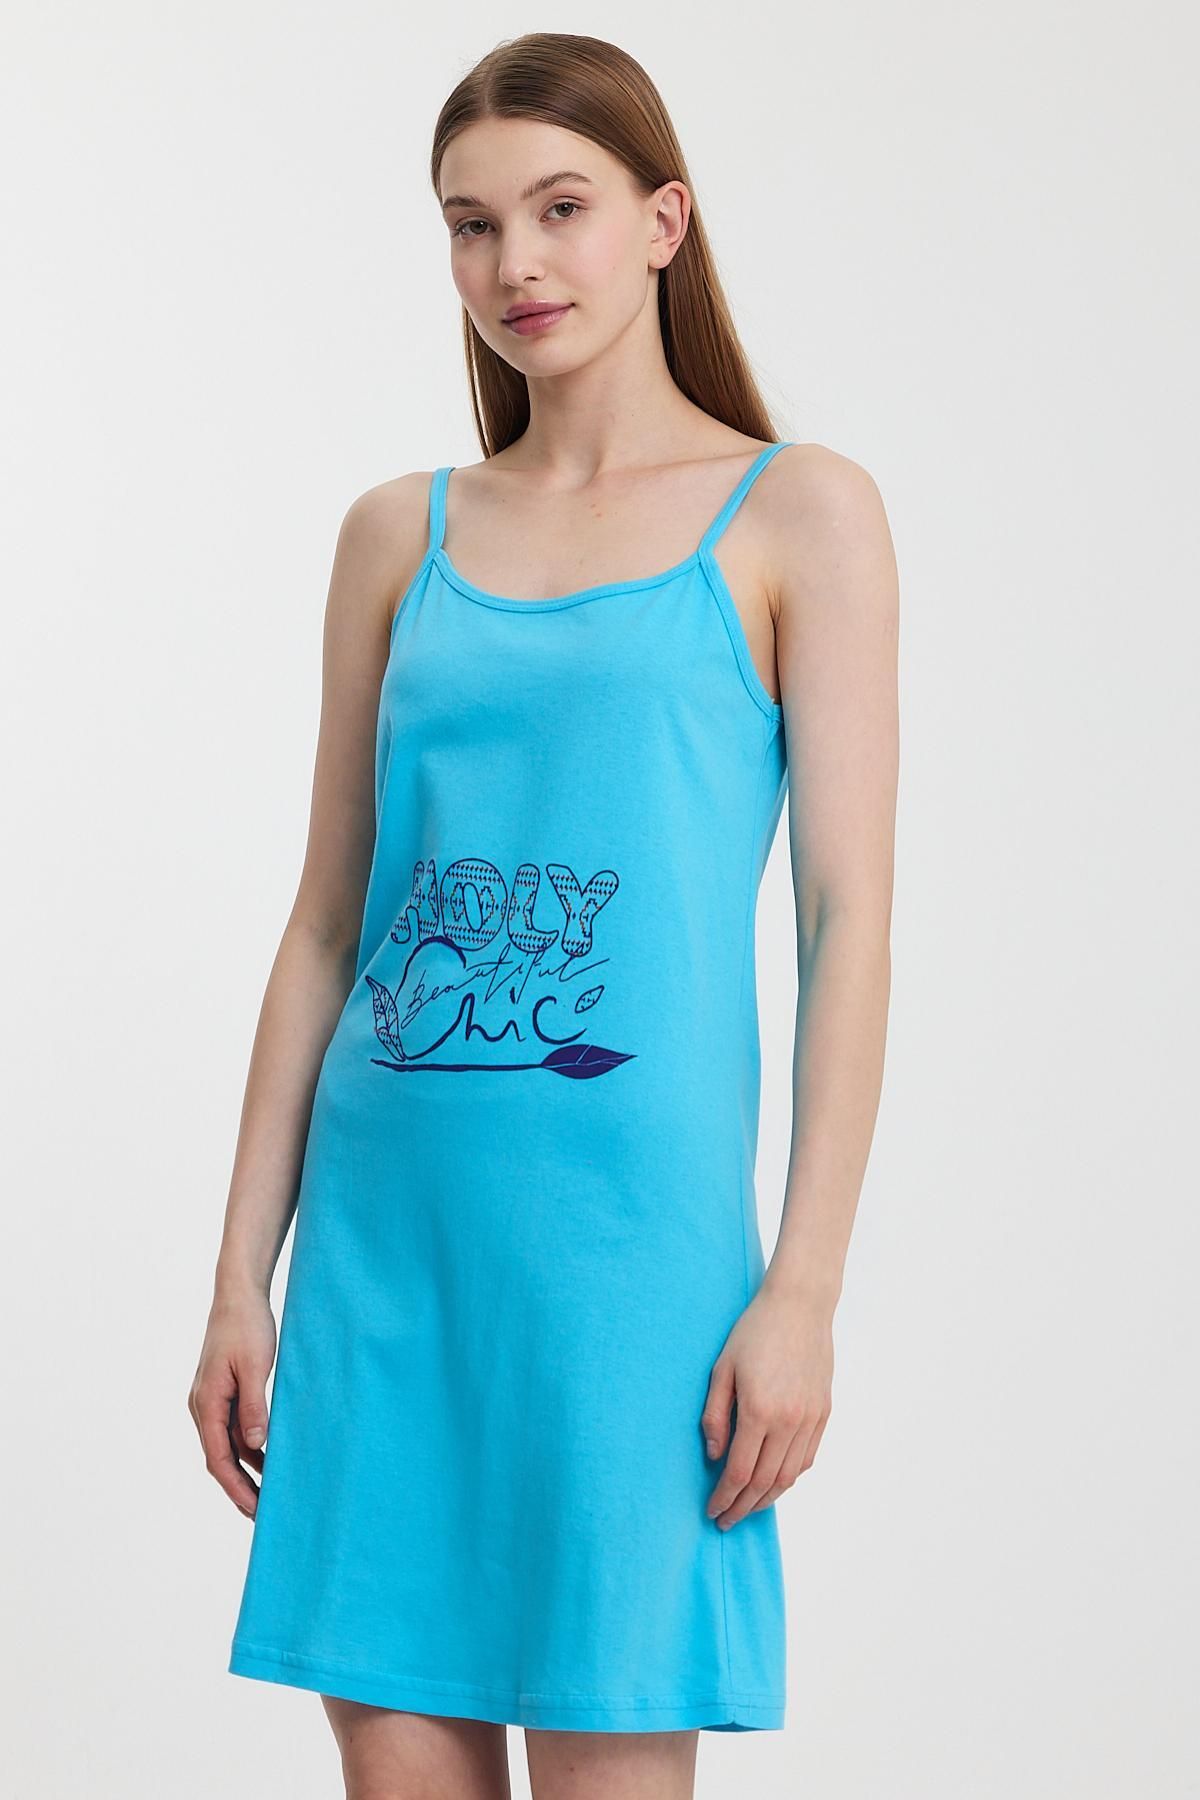 Penyelux Kadın Baskılı PlajTekstili Elbise Deniz Modası Tunik Pareo Mavi